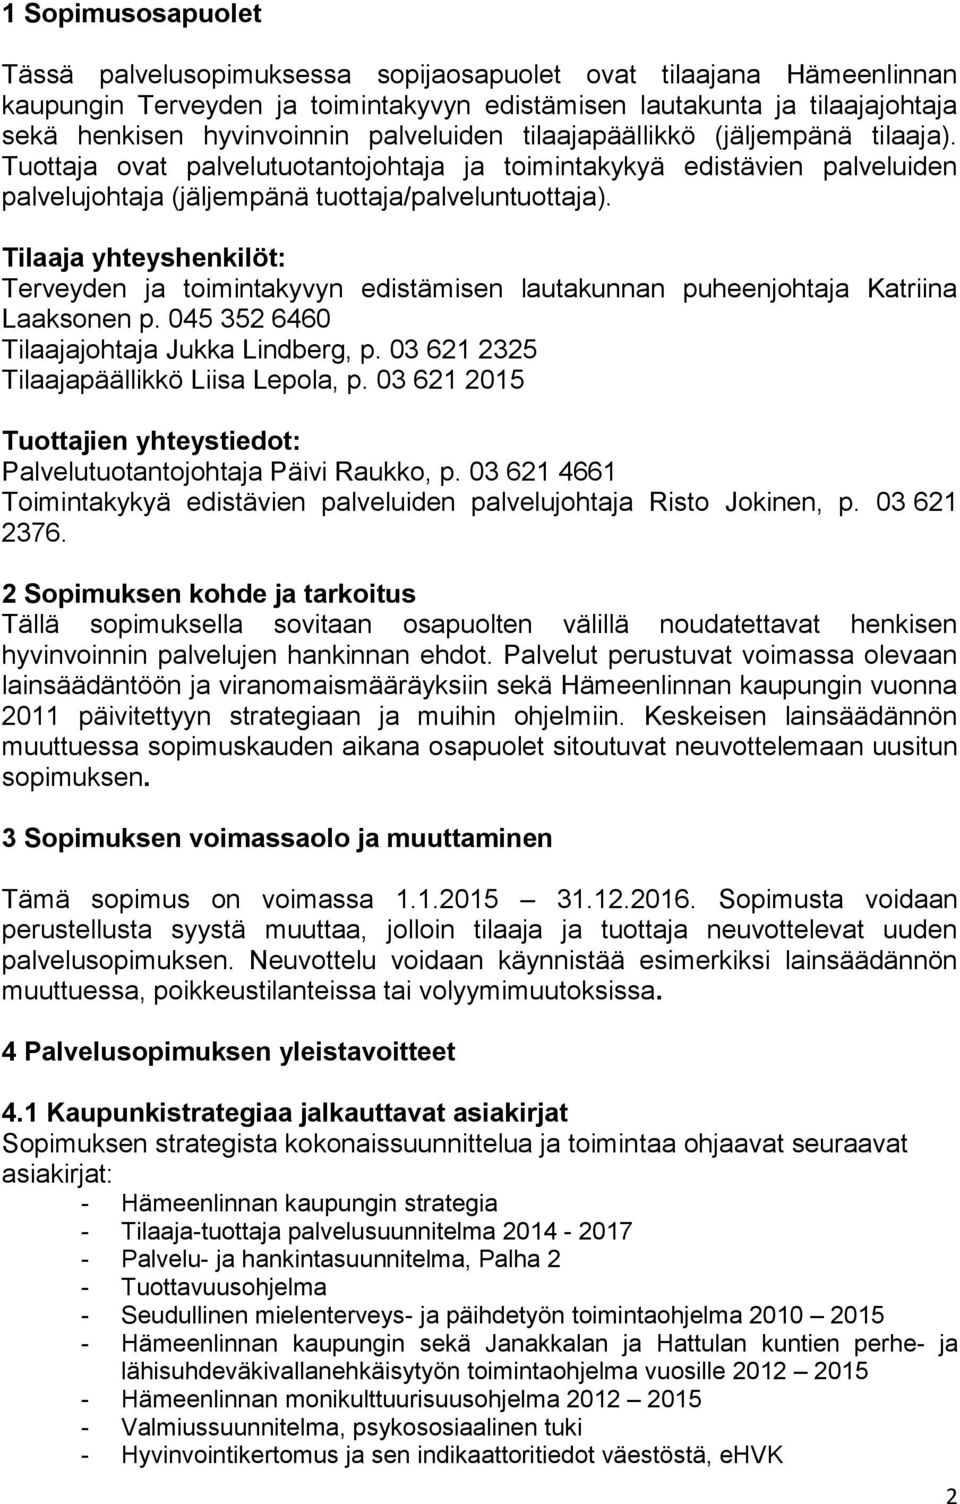 Tilaaja yhteyshenkilöt: Terveyden ja toimintakyvyn edistämisen lautakunnan puheenjohtaja Katriina Laaksonen p. 045 352 6460 Tilaajajohtaja Jukka Lindberg, p.